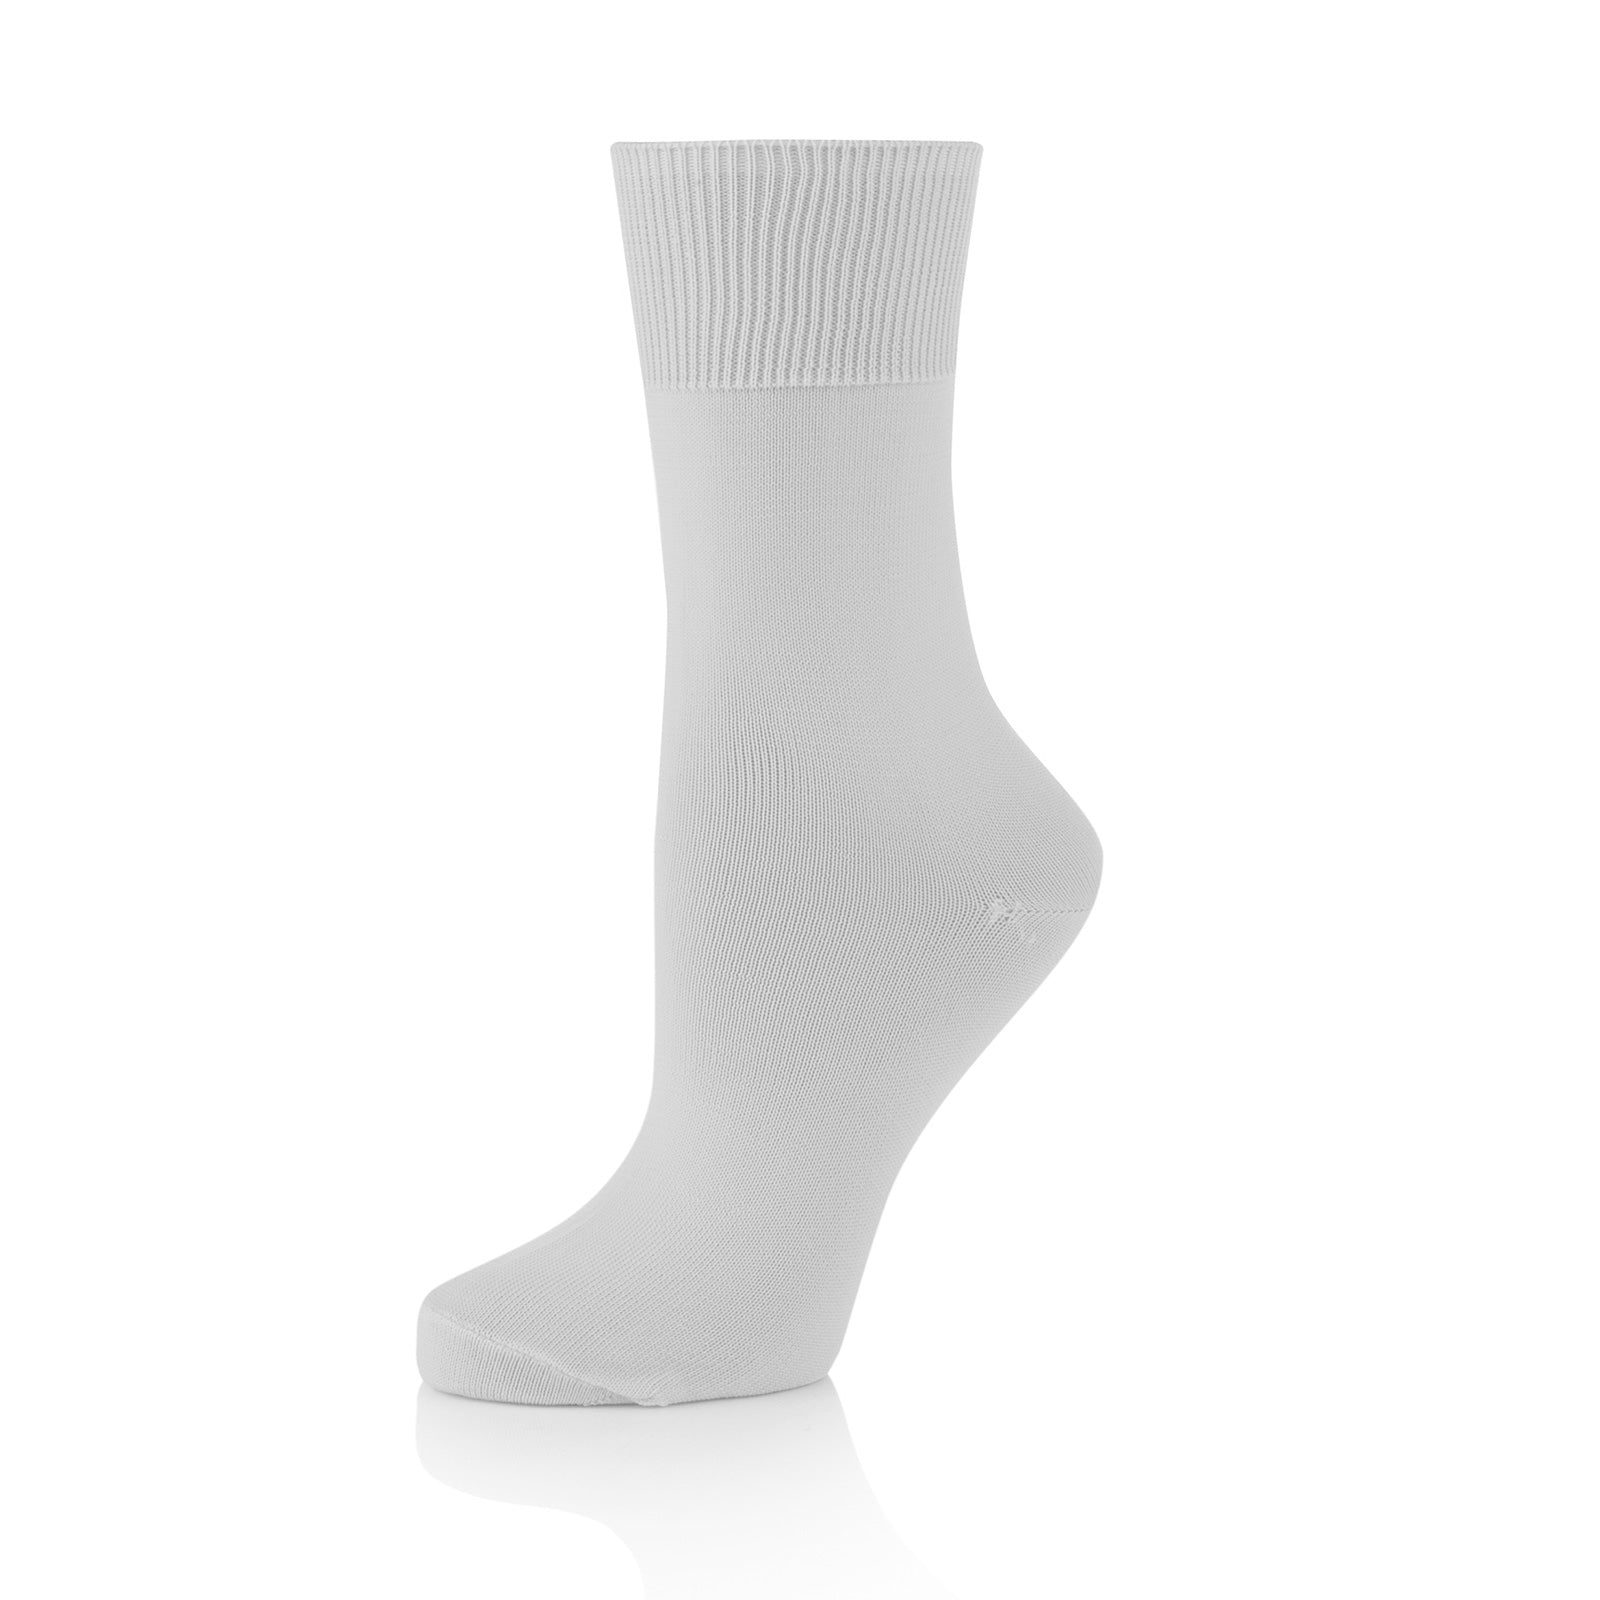 Men's White Ballet Socks.